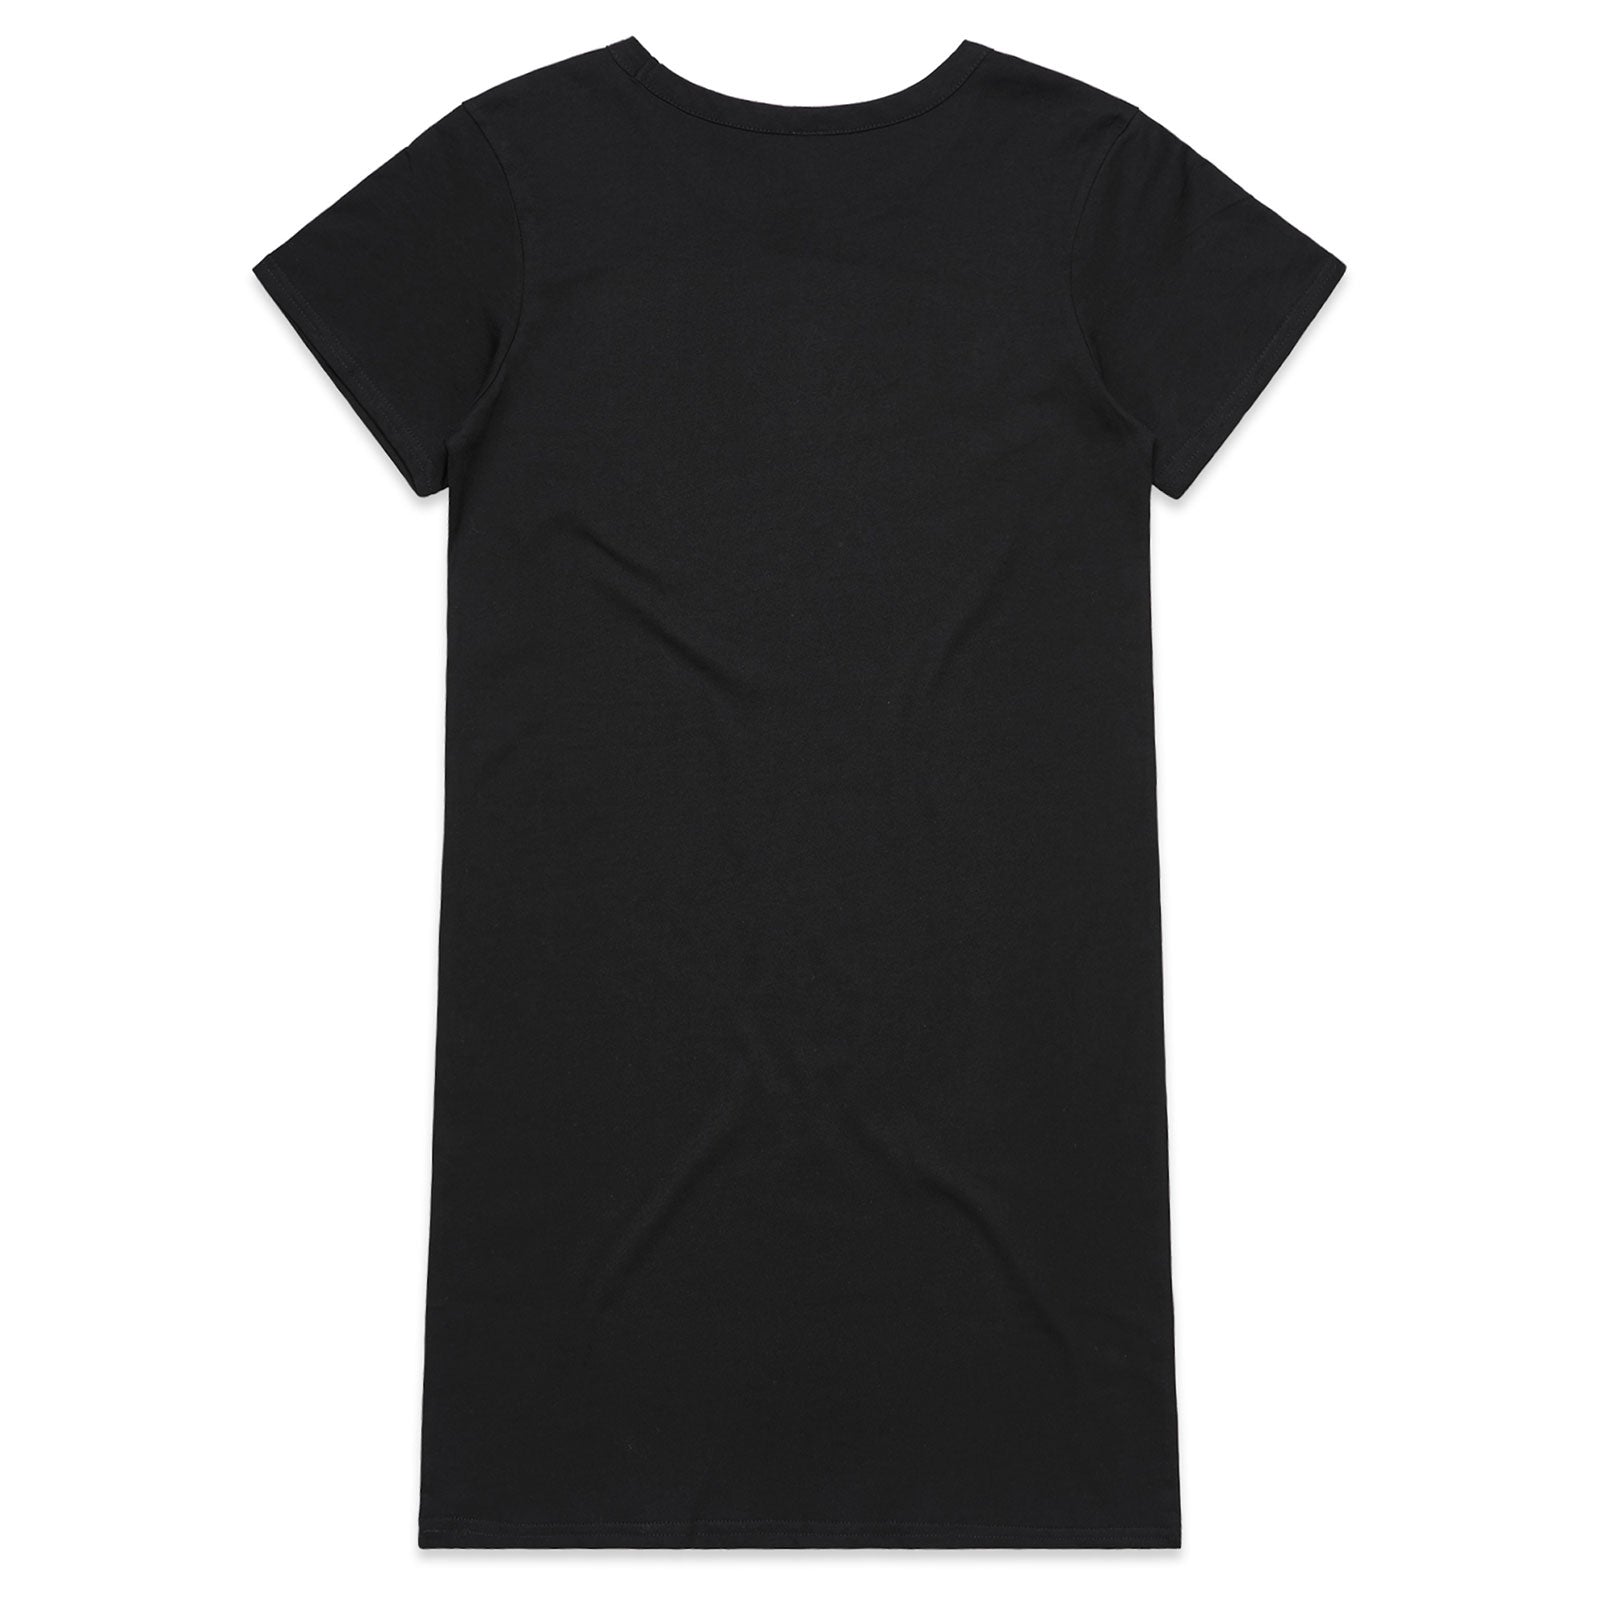 Blackout T-Shirt Dress